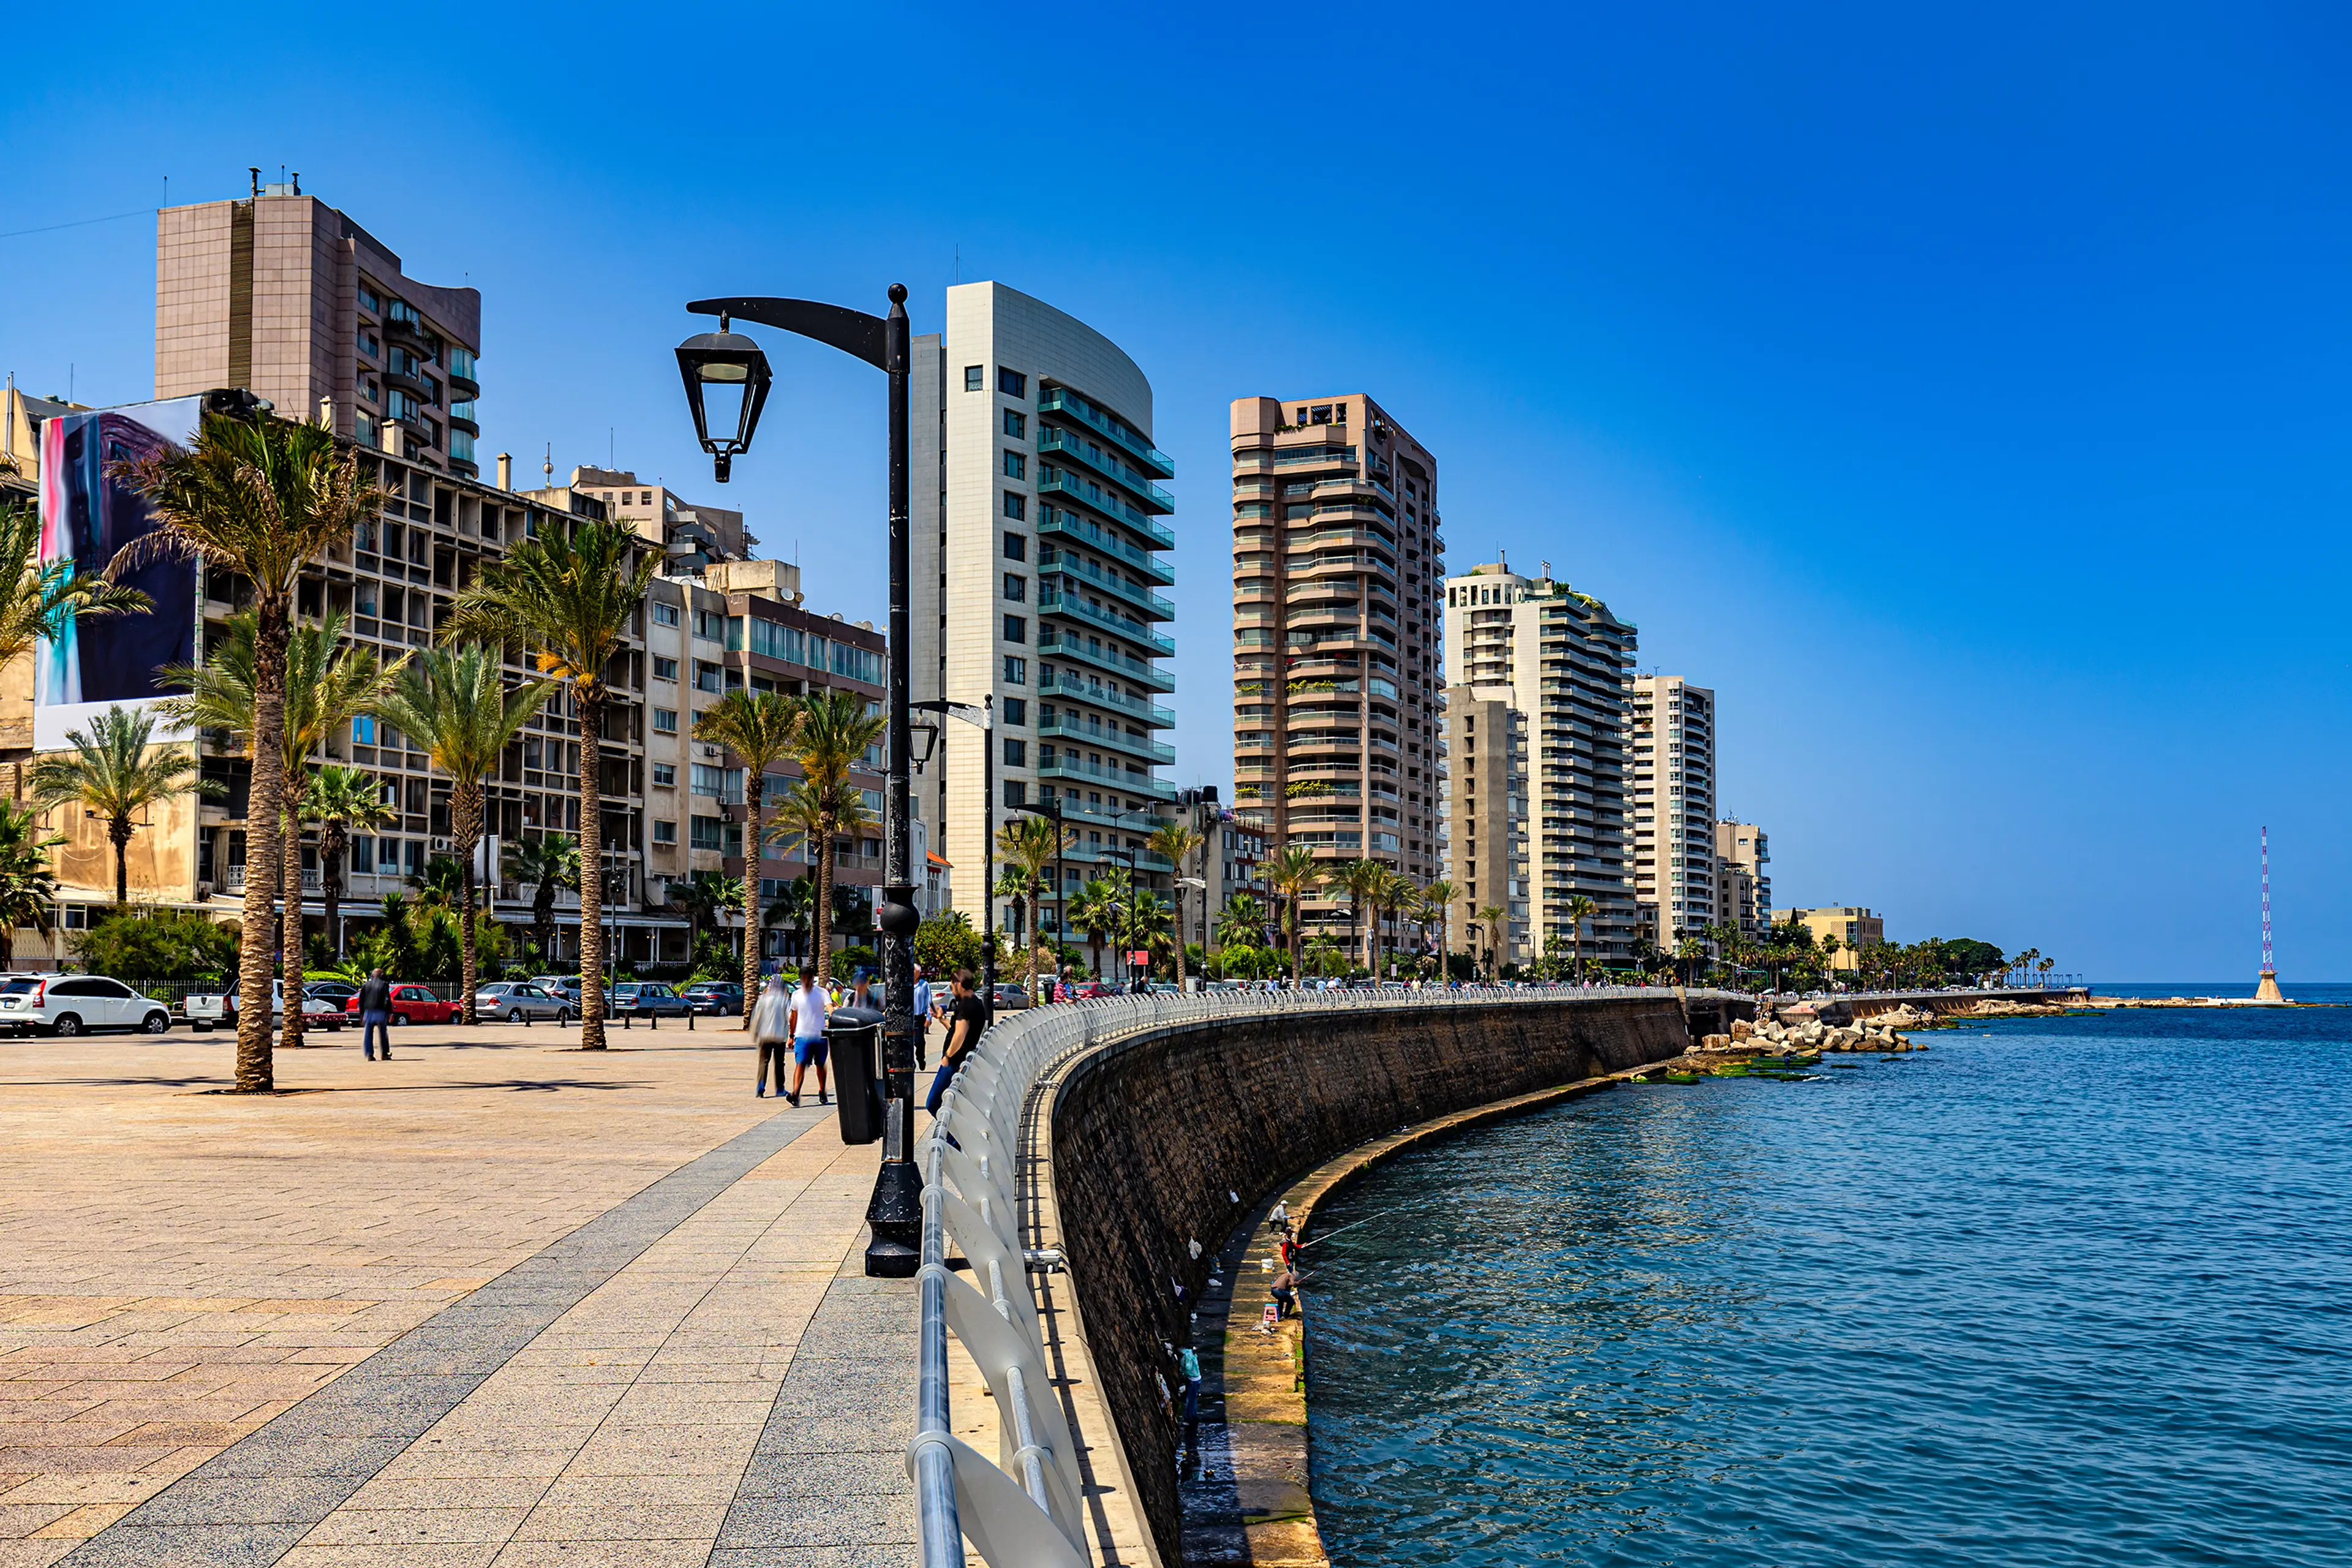 The Corniche Beirut